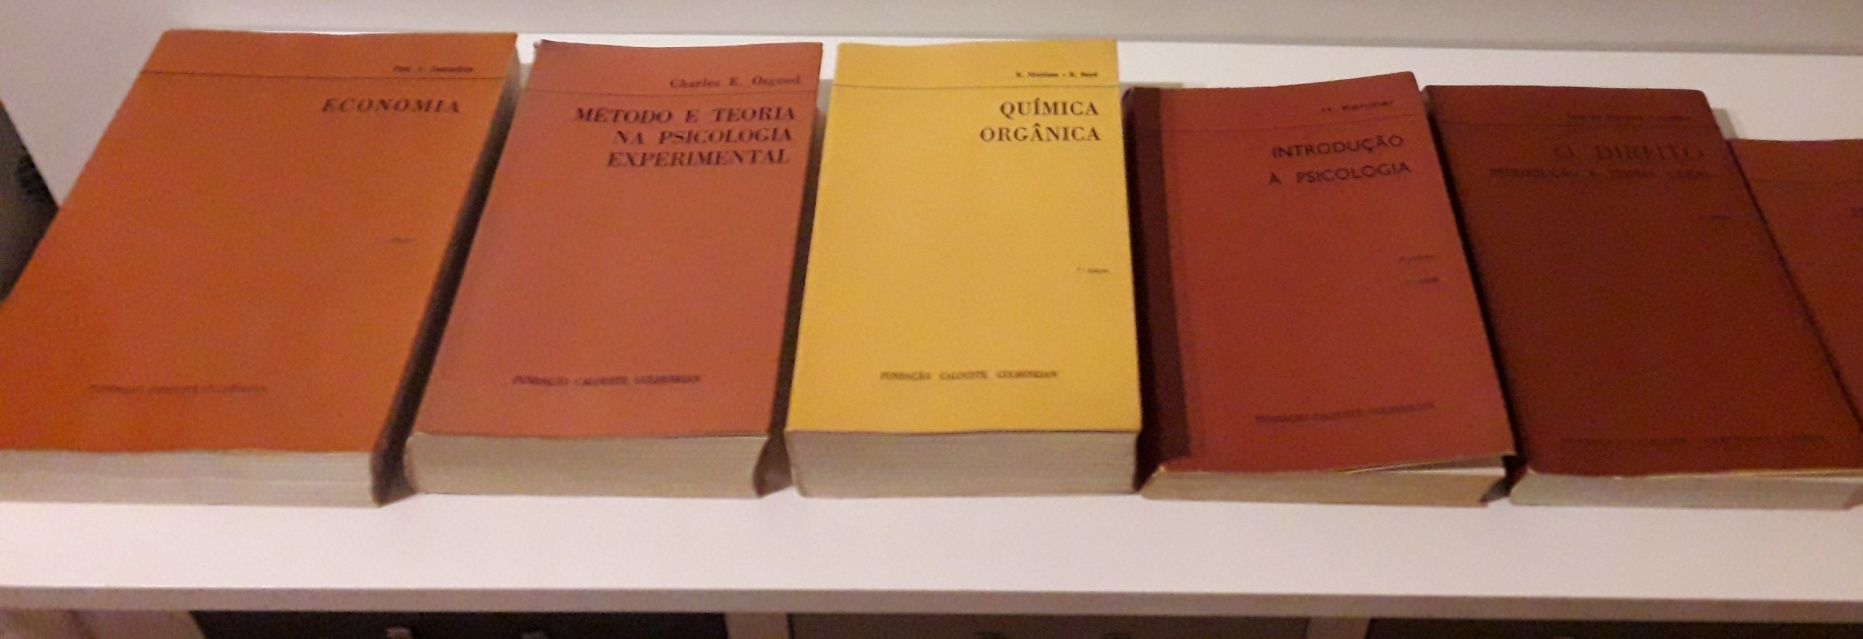 Coleção de livros Fundação Calouste Gulbenkian